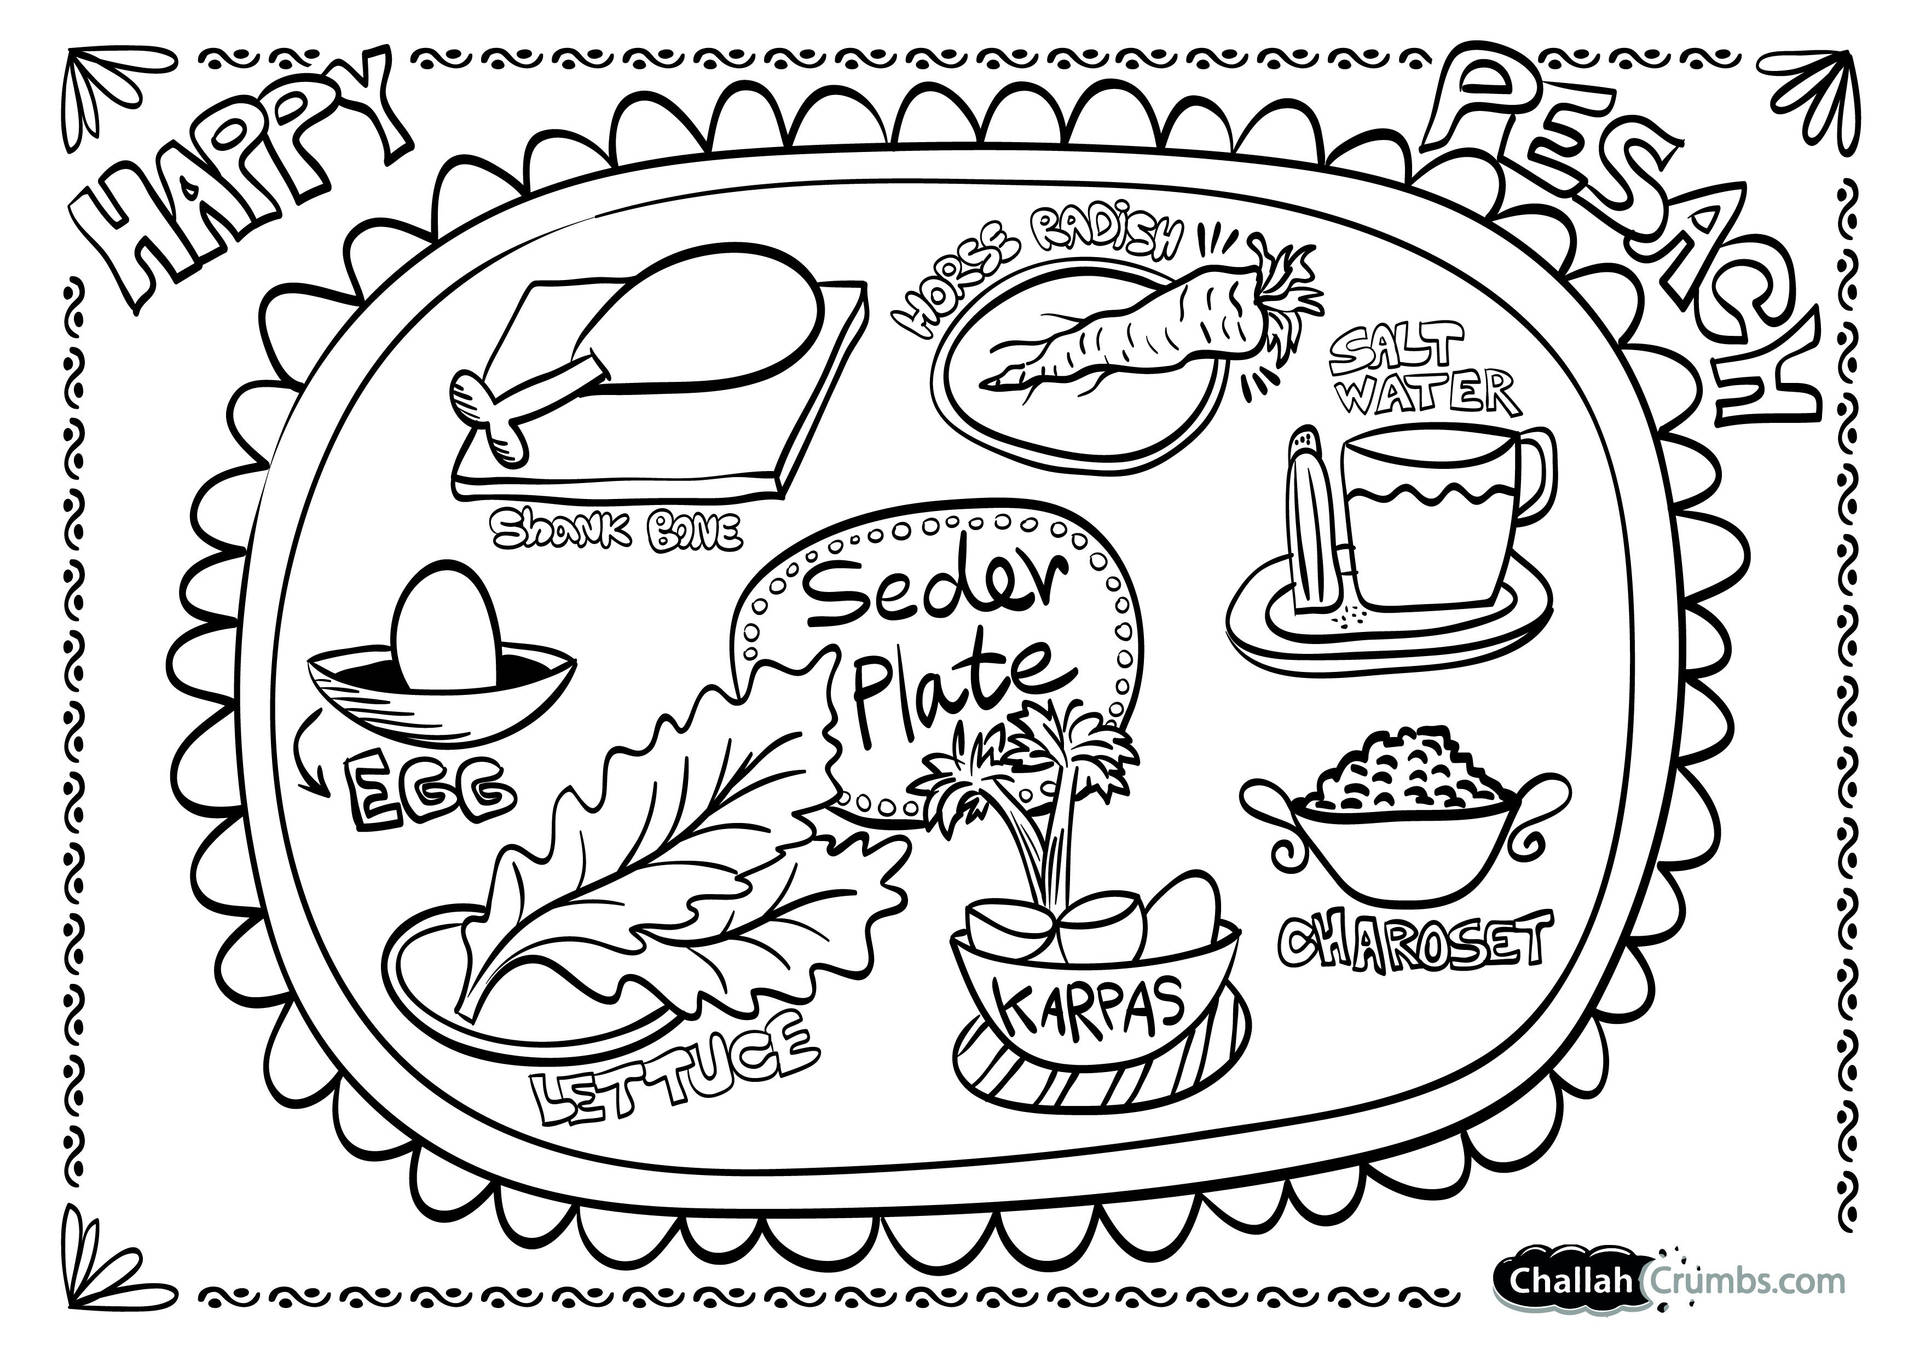 Påske Seder Plate Art Wallpaper